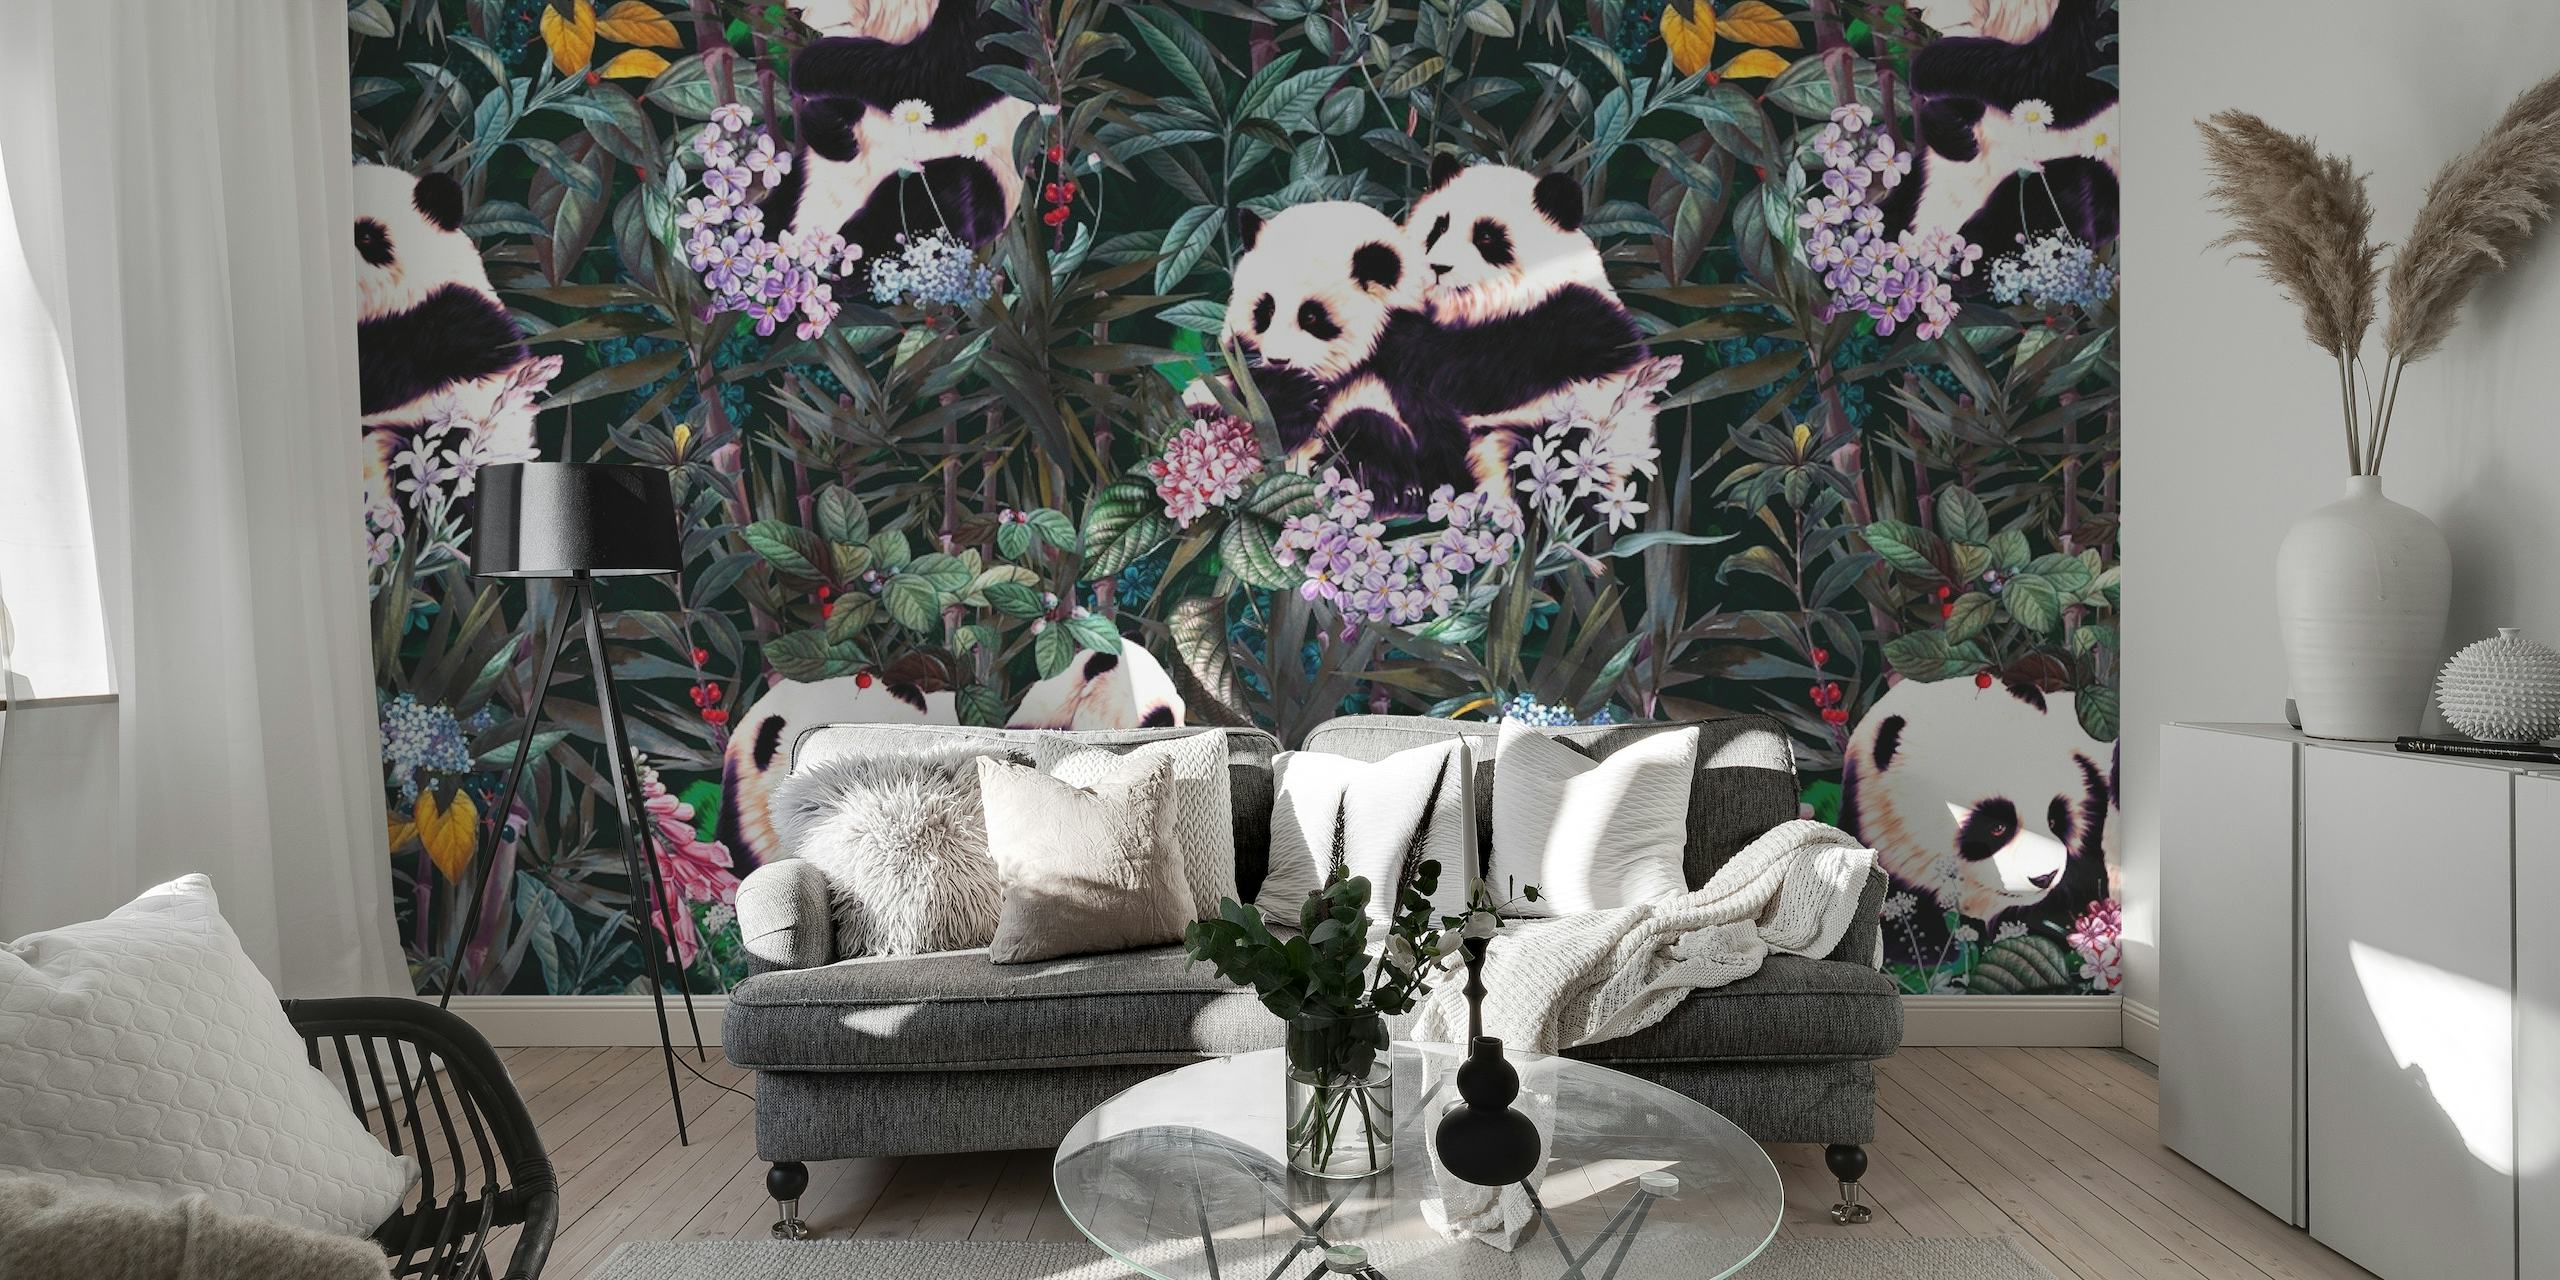 Legesyge pandaer midt i frodig regnskovsflora på vægmaleri